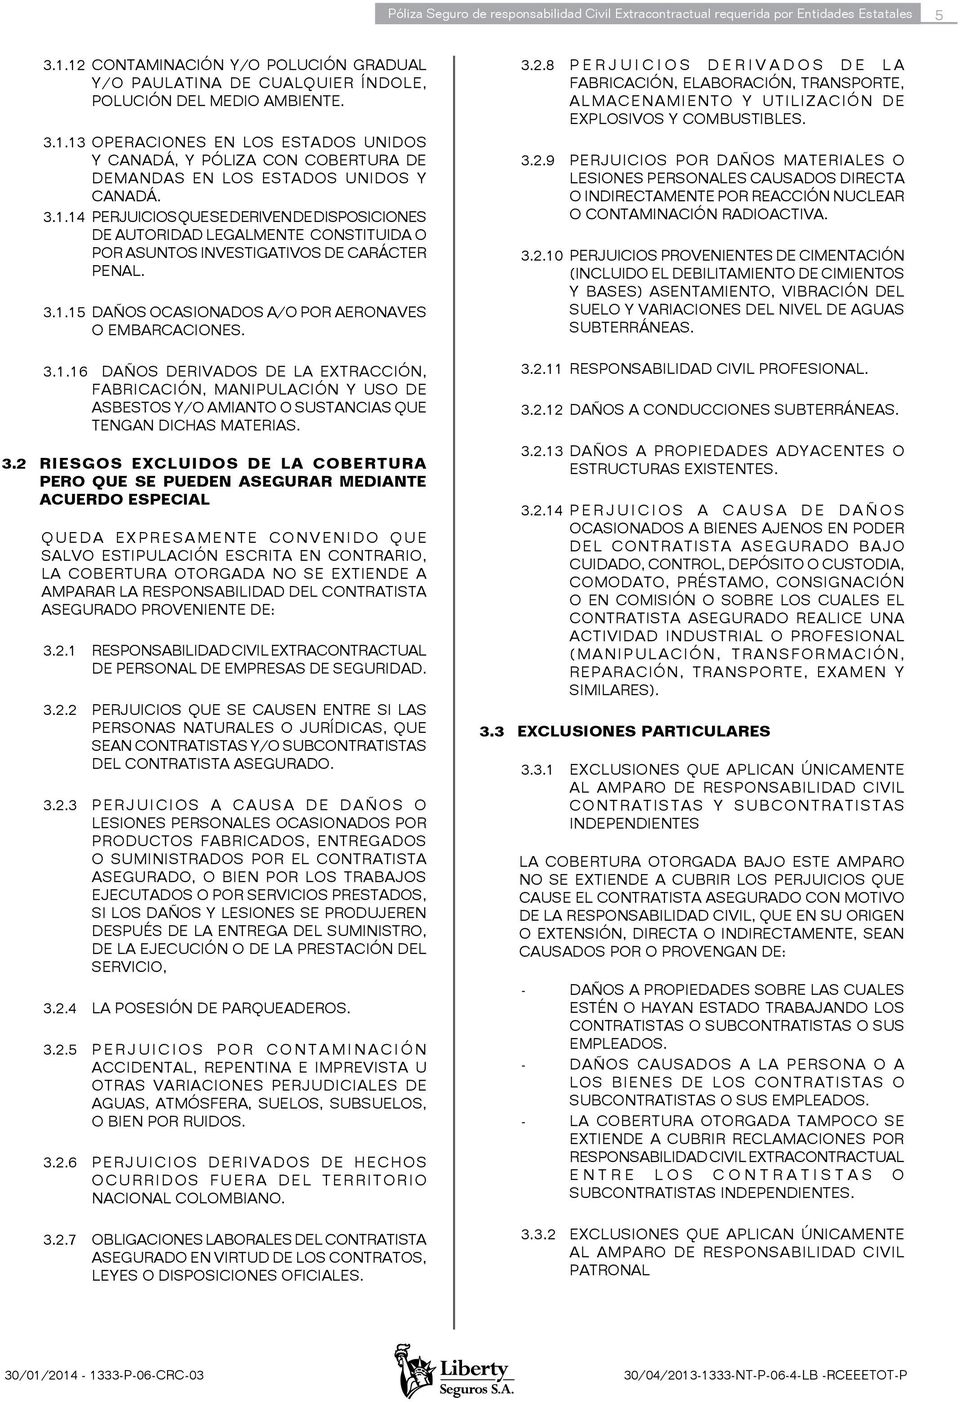 3.1.14 PERJUICIOS QUE SE DERIVEN DE DISPOSICIONES DE AUTORIDAD LEGALMENTE CONSTITUIDA O POR ASUNTOS INVESTIGATIVOS DE CARÁCTER PENAL. 3.1.15 DAÑOS OCASIONADOS A/O POR AERONAVES O EMBARCACIONES. 3.1.16 DAÑOS DERIVADOS DE LA EXTRACCIÓN, FABRICACIÓN, MANIPULACIÓN Y USO DE ASBESTOS Y/O AMIANTO O SUSTANCIAS QUE TENGAN DICHAS MATERIAS.